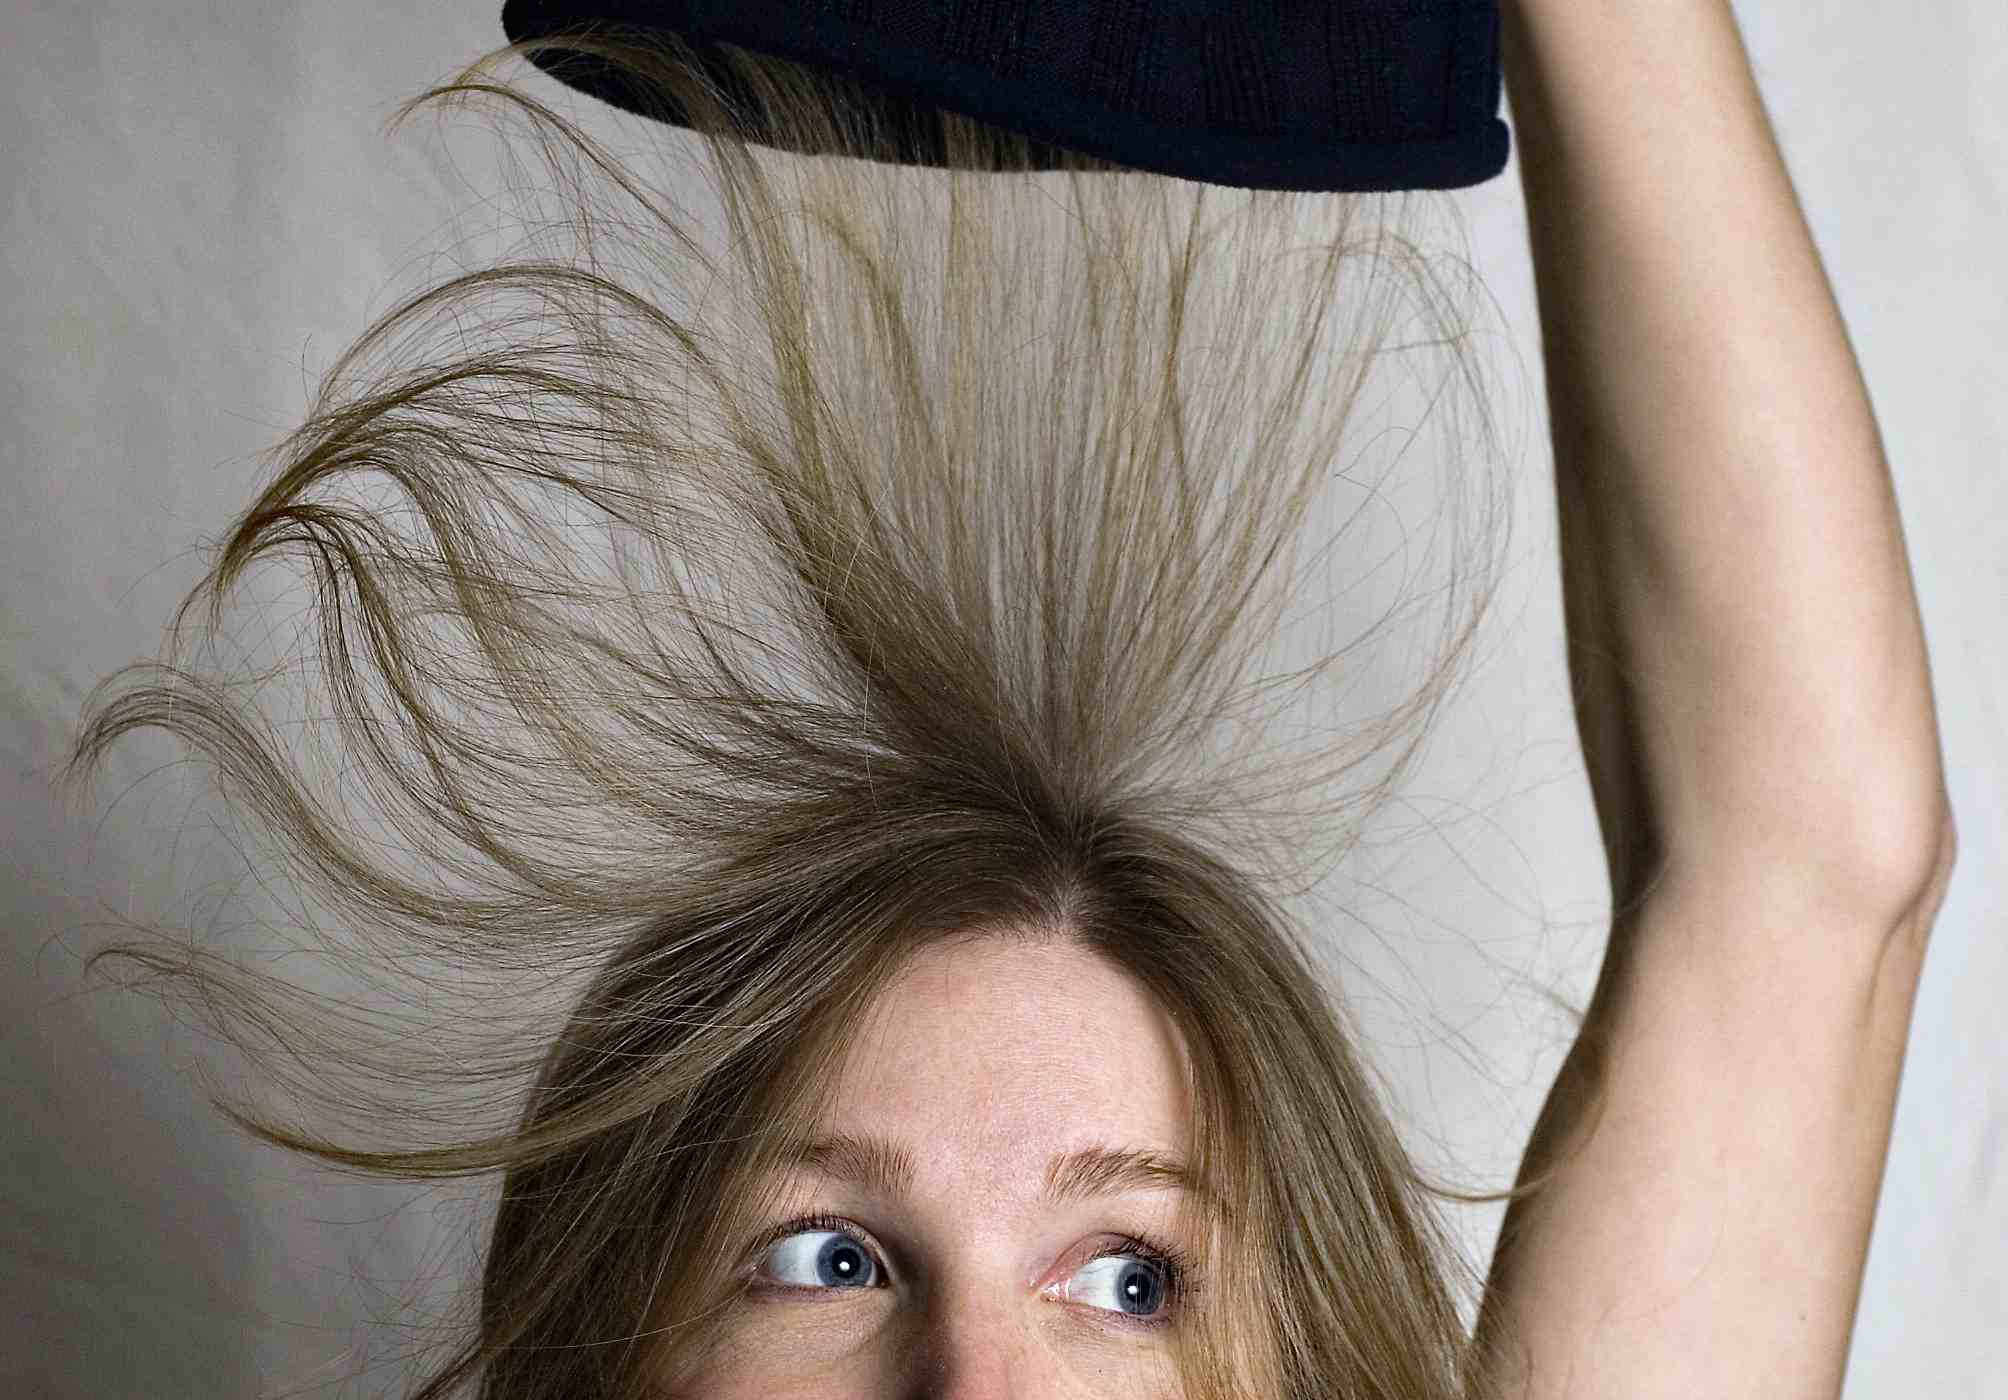 Как ухаживать за волосами, которые пушатся и вьются от повышенной влажности: мои проверенные способы